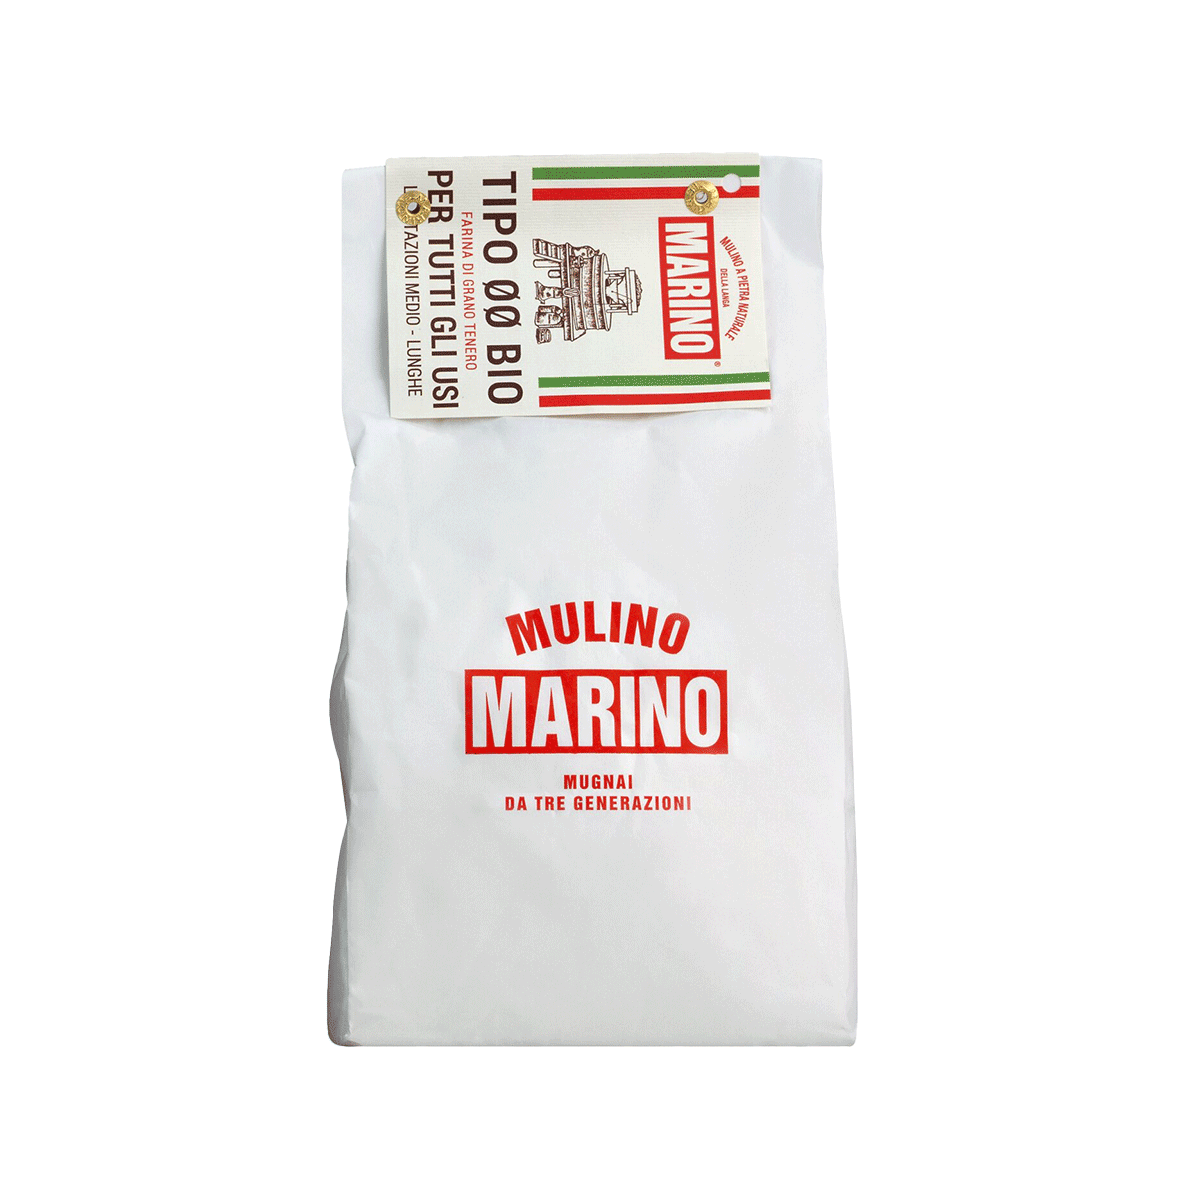 BOX PIZZA PER TUTTI - Mulino Marino